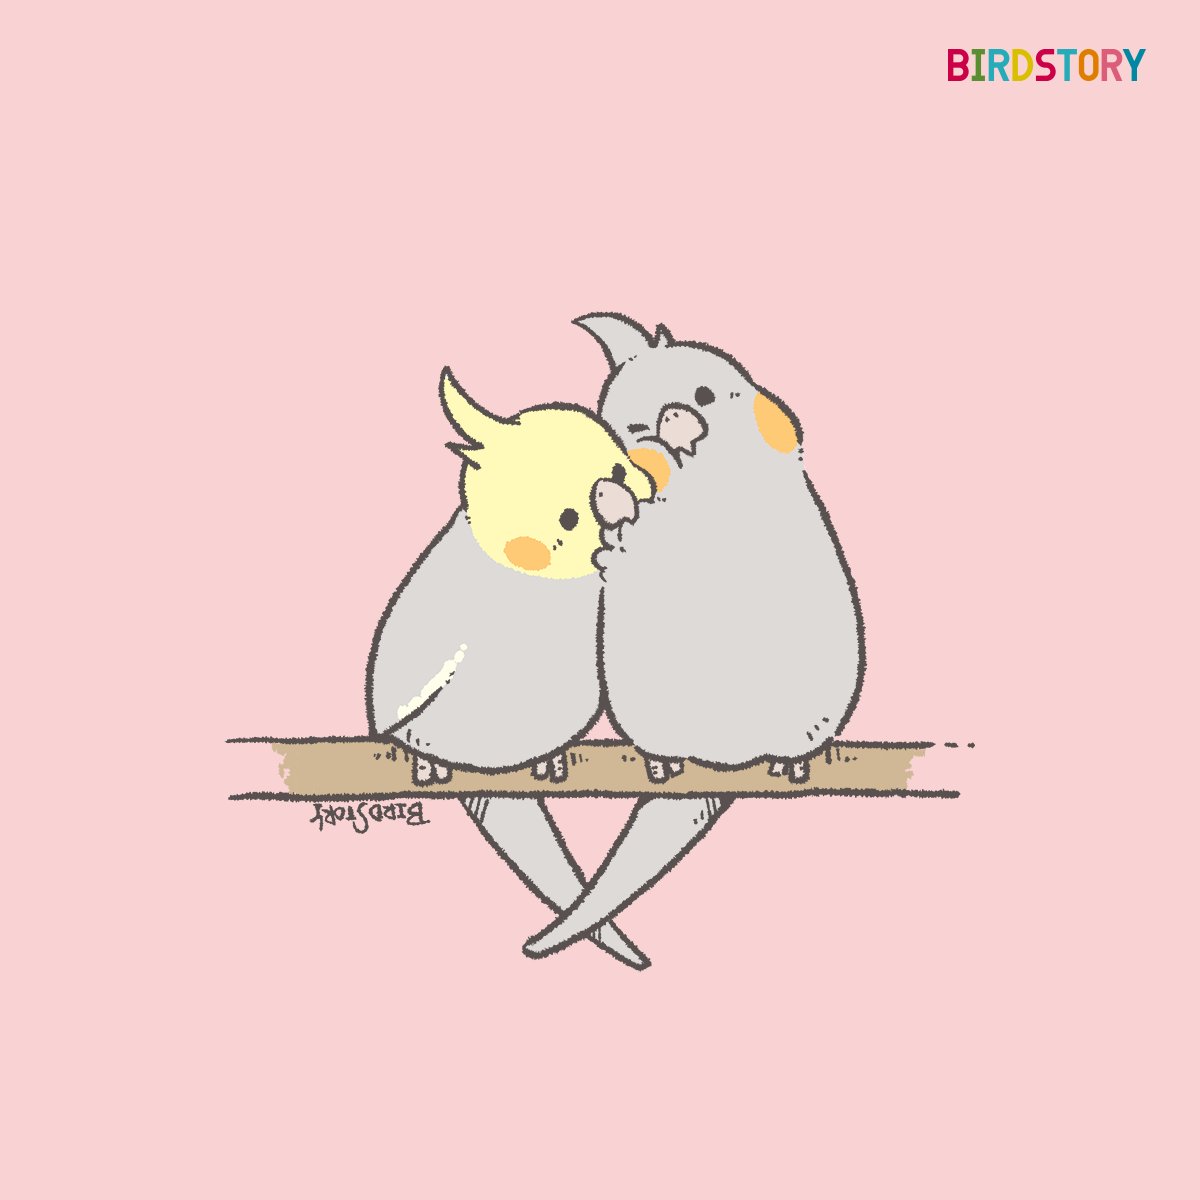 「おはようございます。 本日は6月12日、恋人の日とのことです そして週のはじまり」|BIRDSTORYのイラスト